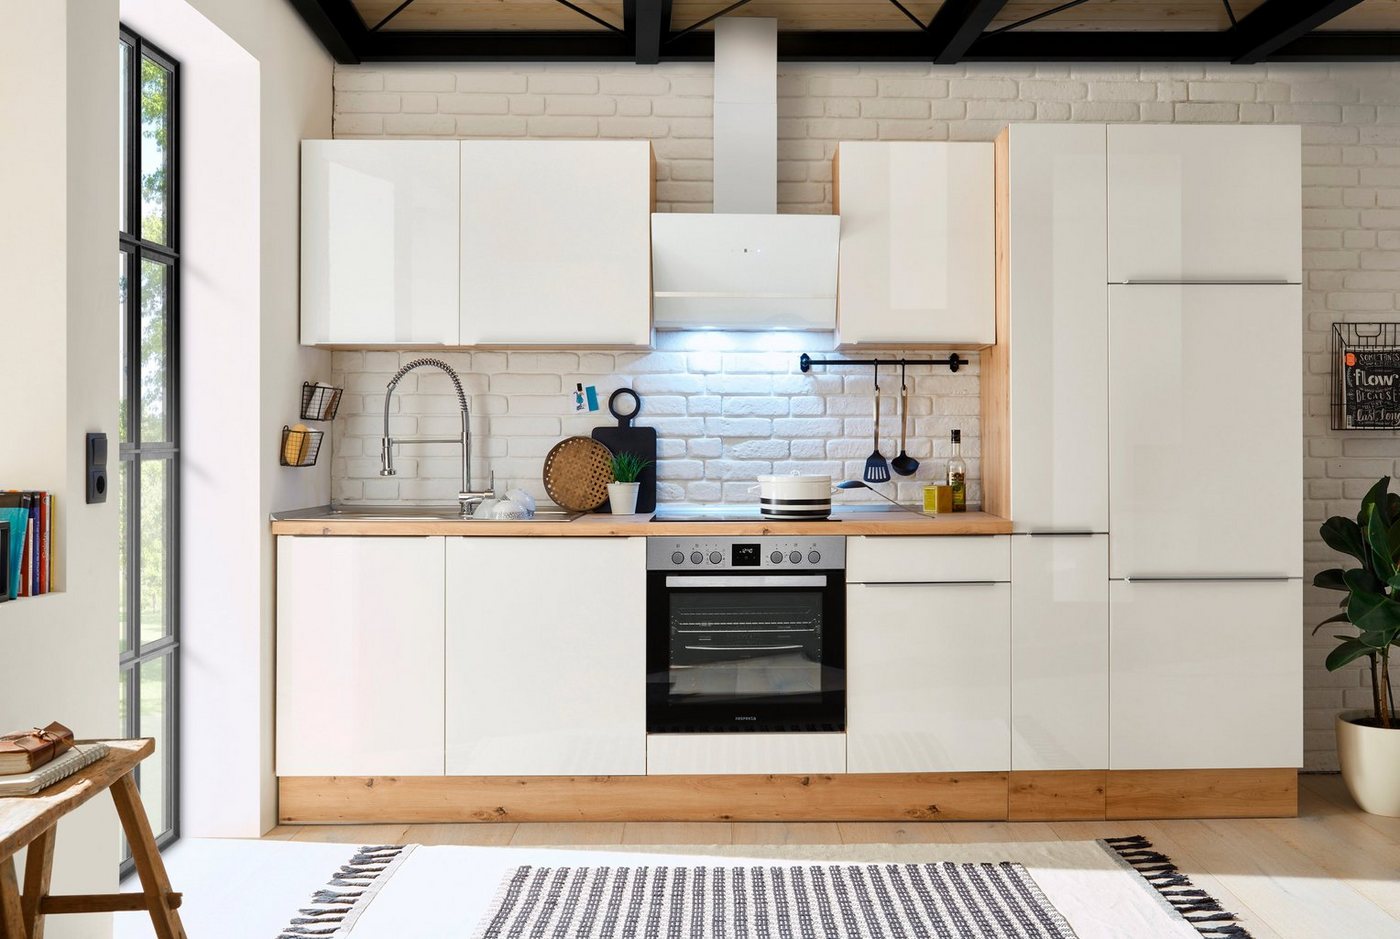 RESPEKTA Küchenzeile Safado aus der Serie Marleen, hochwertige Ausstattung wie Soft Close Funktion, Breite 310 cm weiß